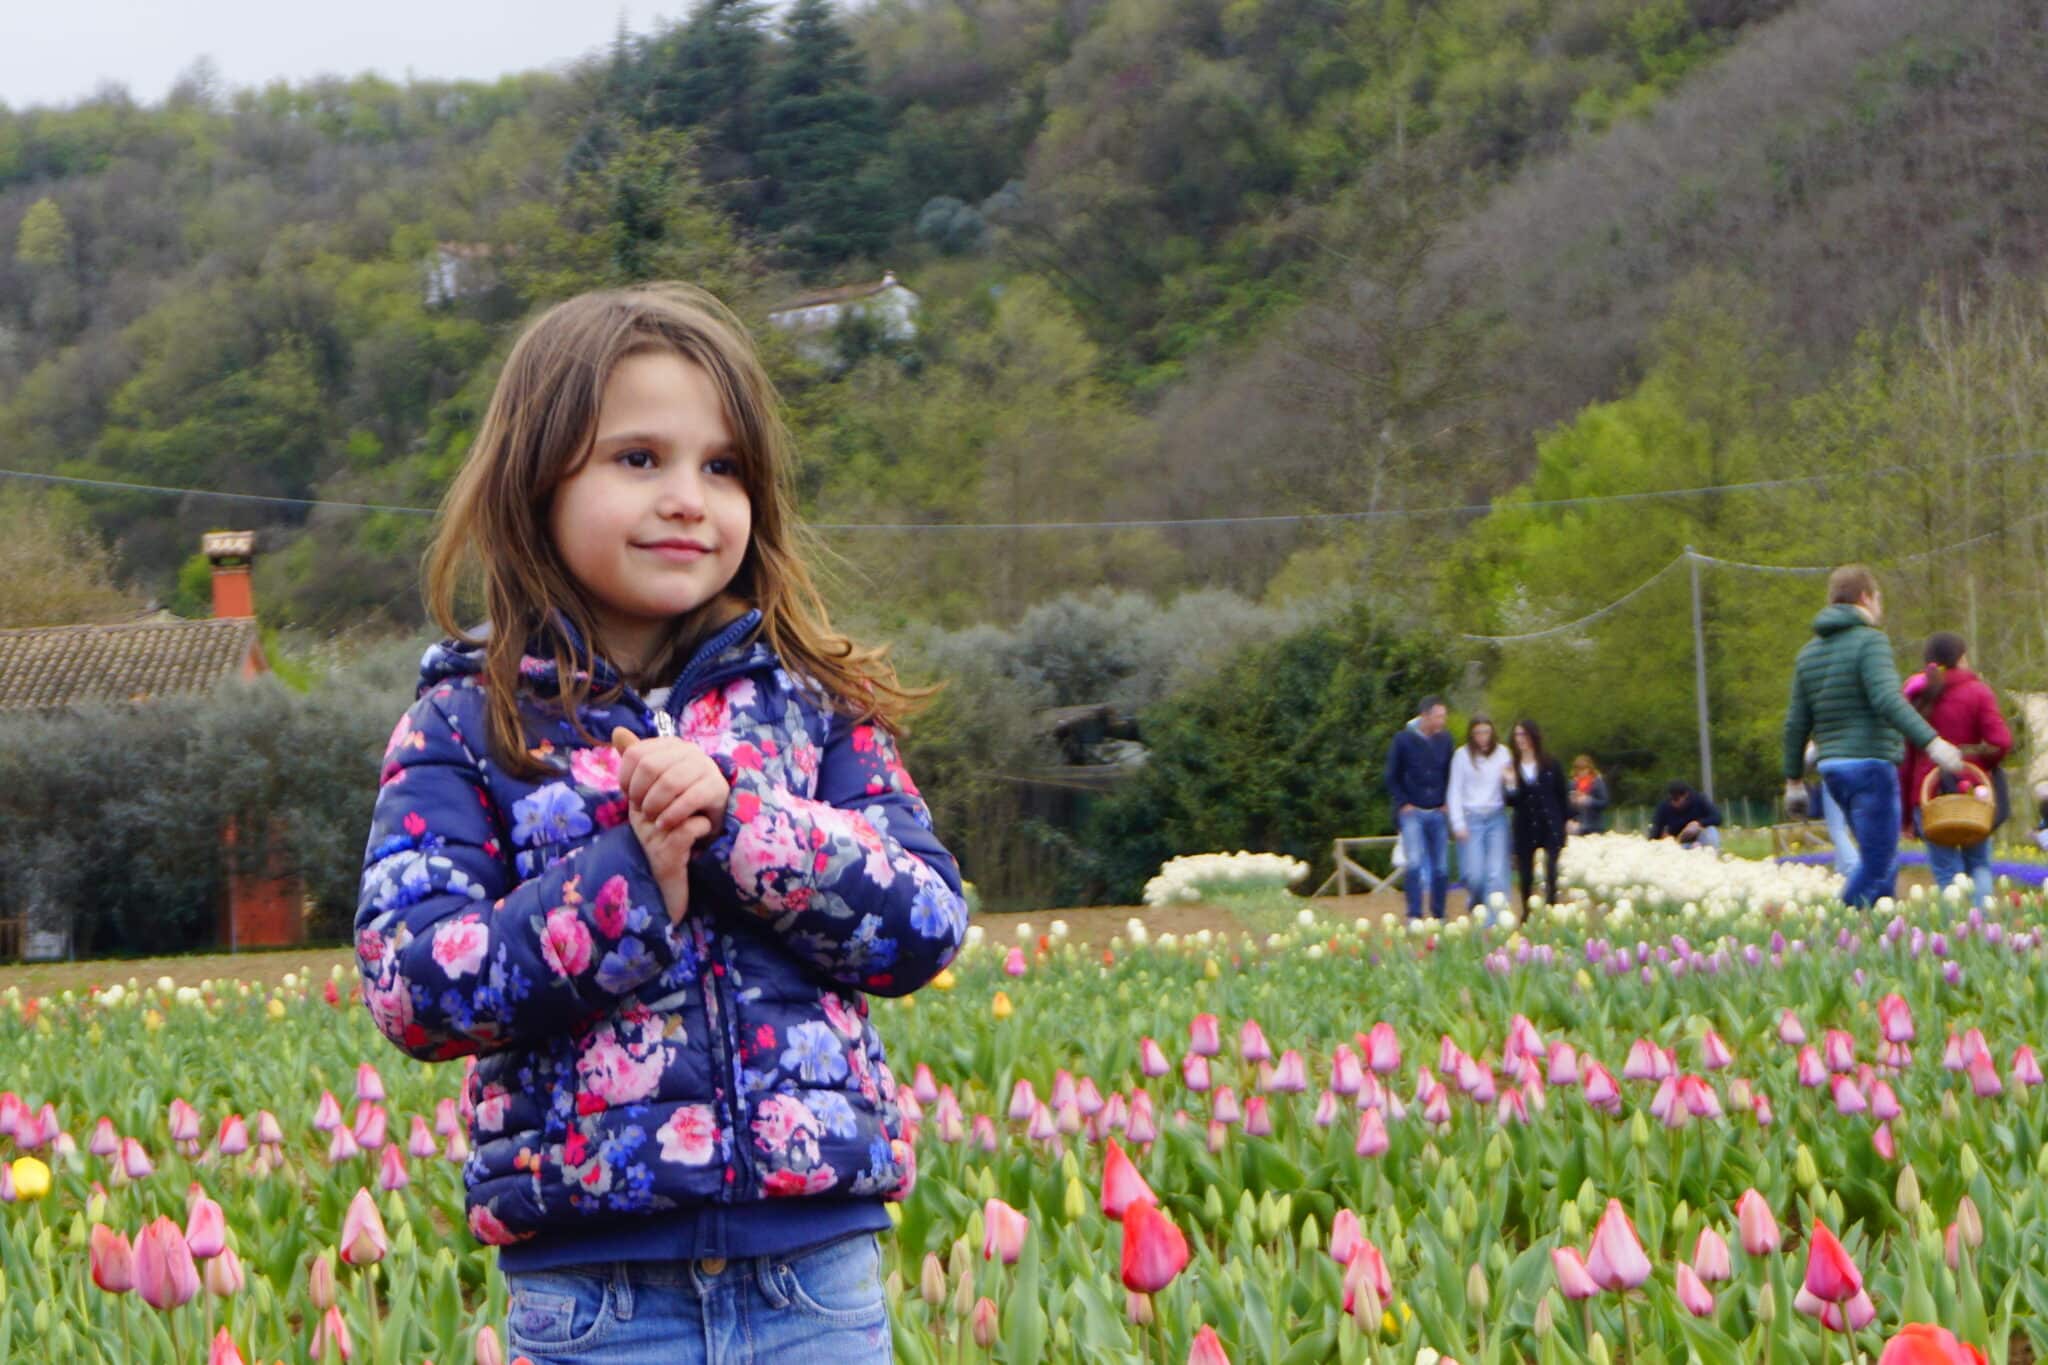 Tulipani Euganei: il campo di tulipani you-pick ai piedi dei Colli Euganei (PD)